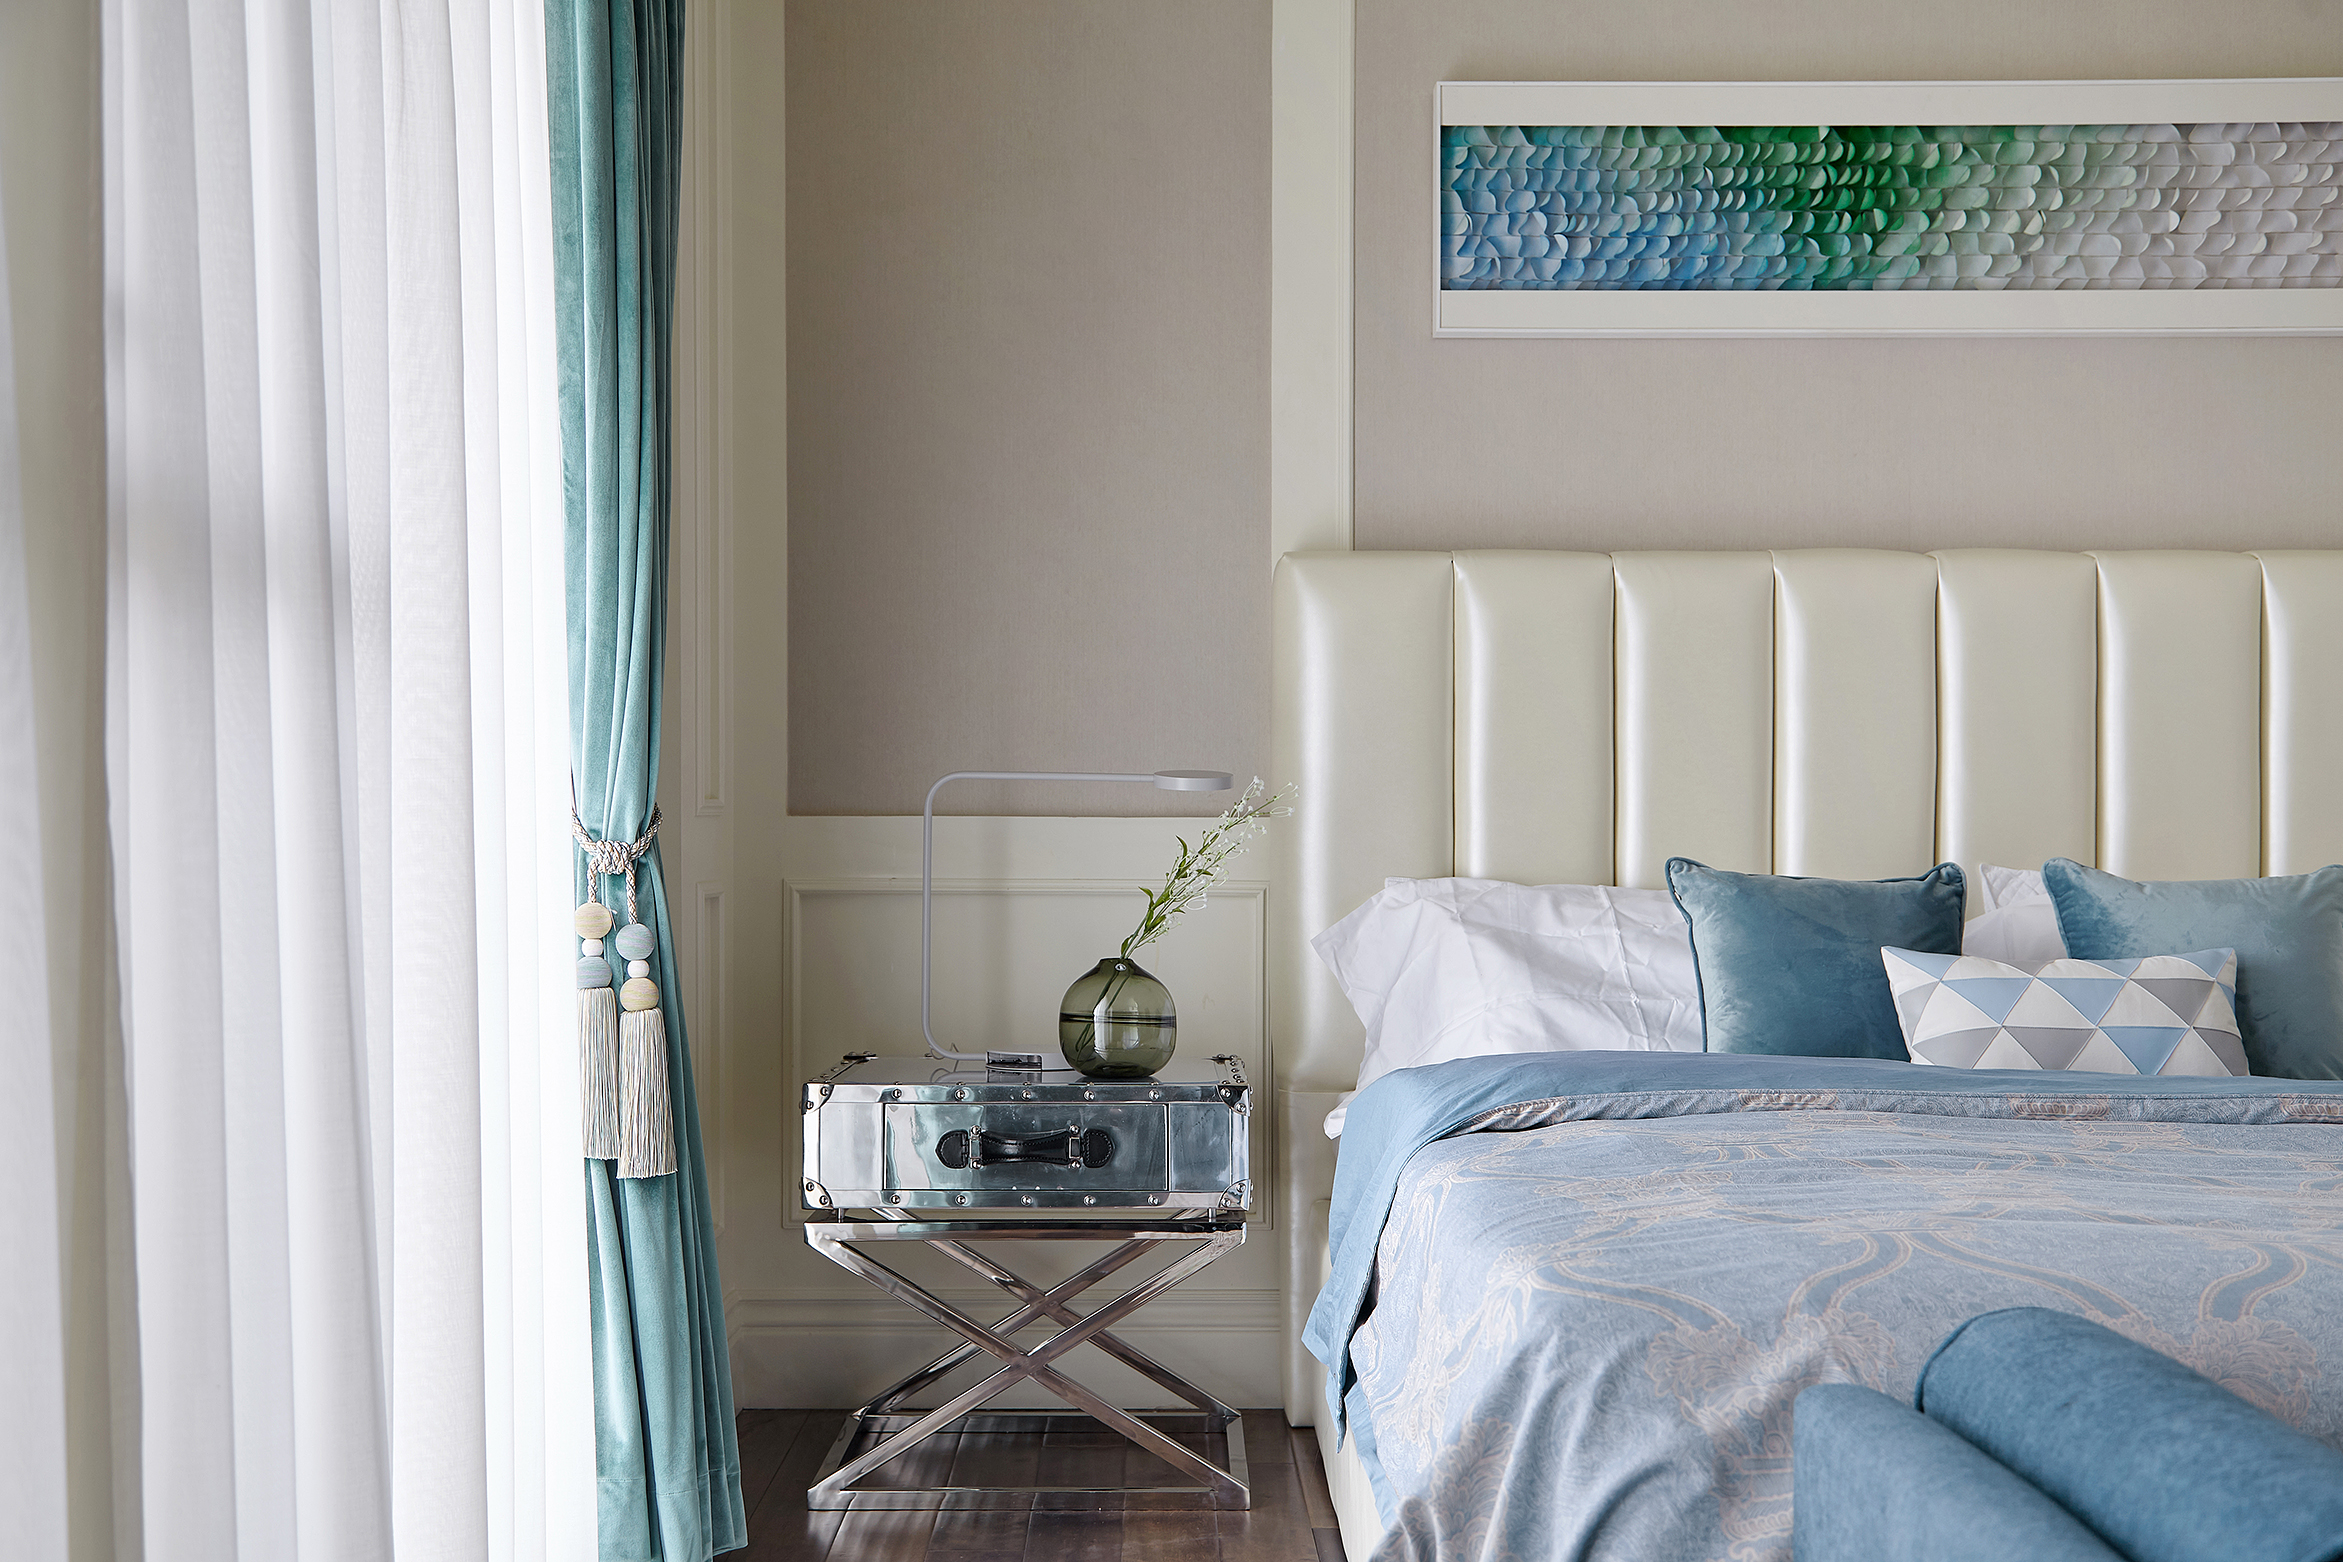 欧式 混搭 别墅 卧室图片来自尚舍设计在收藏者的温馨house的分享